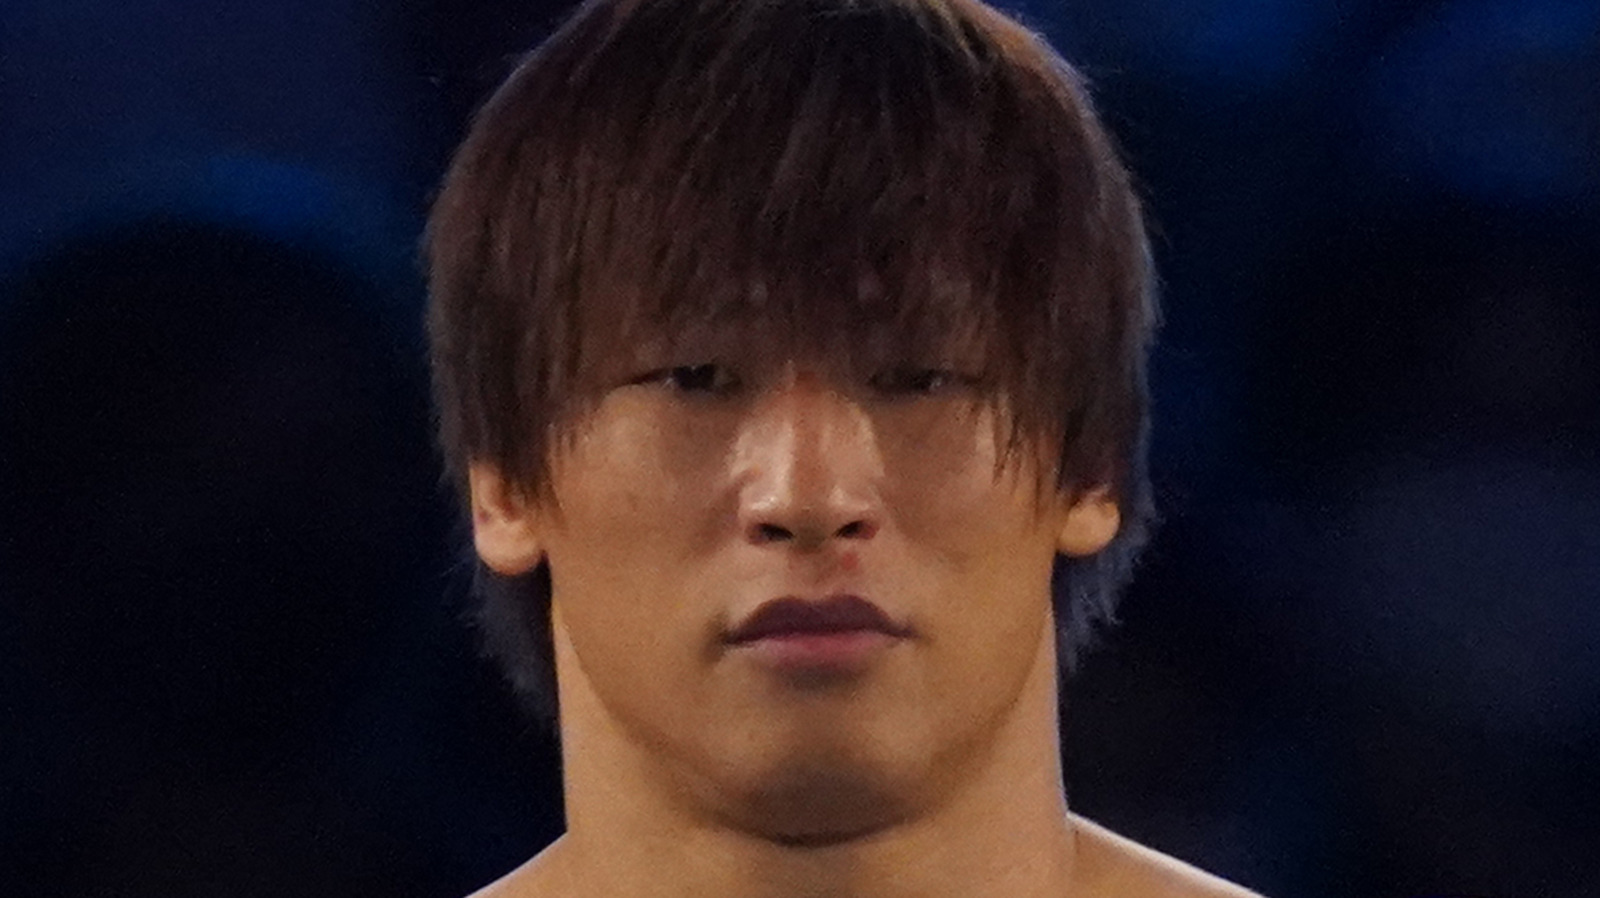 Kota Ibushi se lesiona el hombro nuevamente, aún promete competir durante el fin de semana de WrestleMania